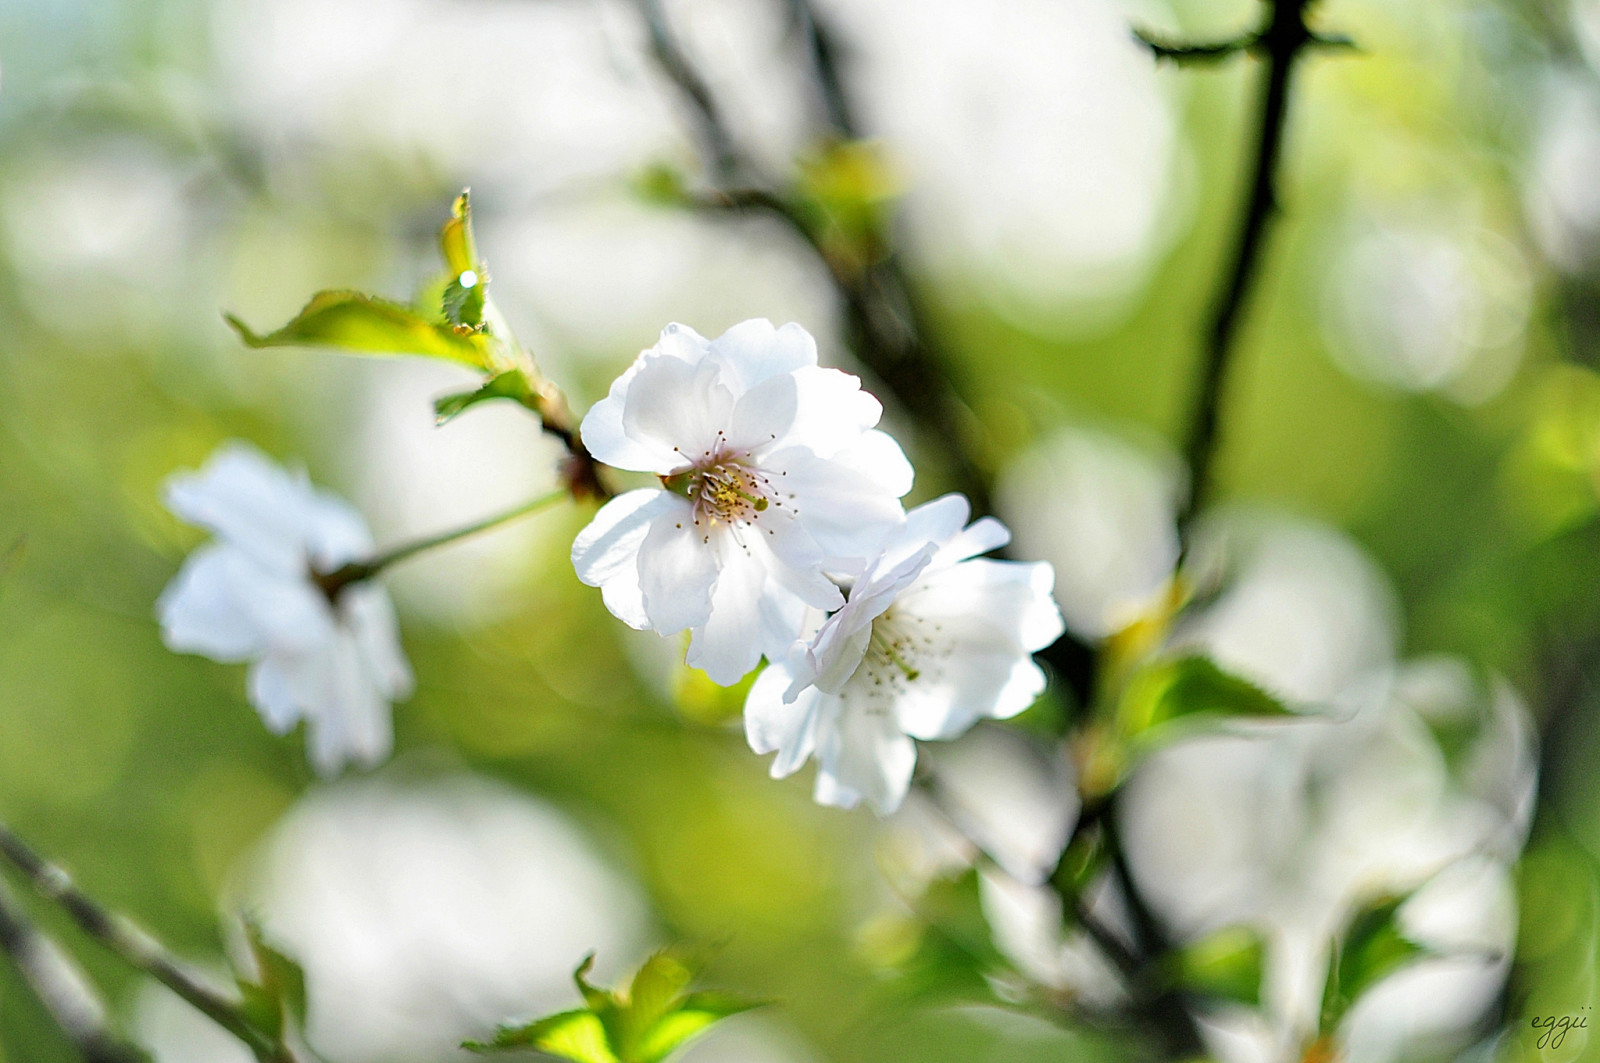 ranting, Latar Belakang, bunga-bunga, musim semi, putih, ceri